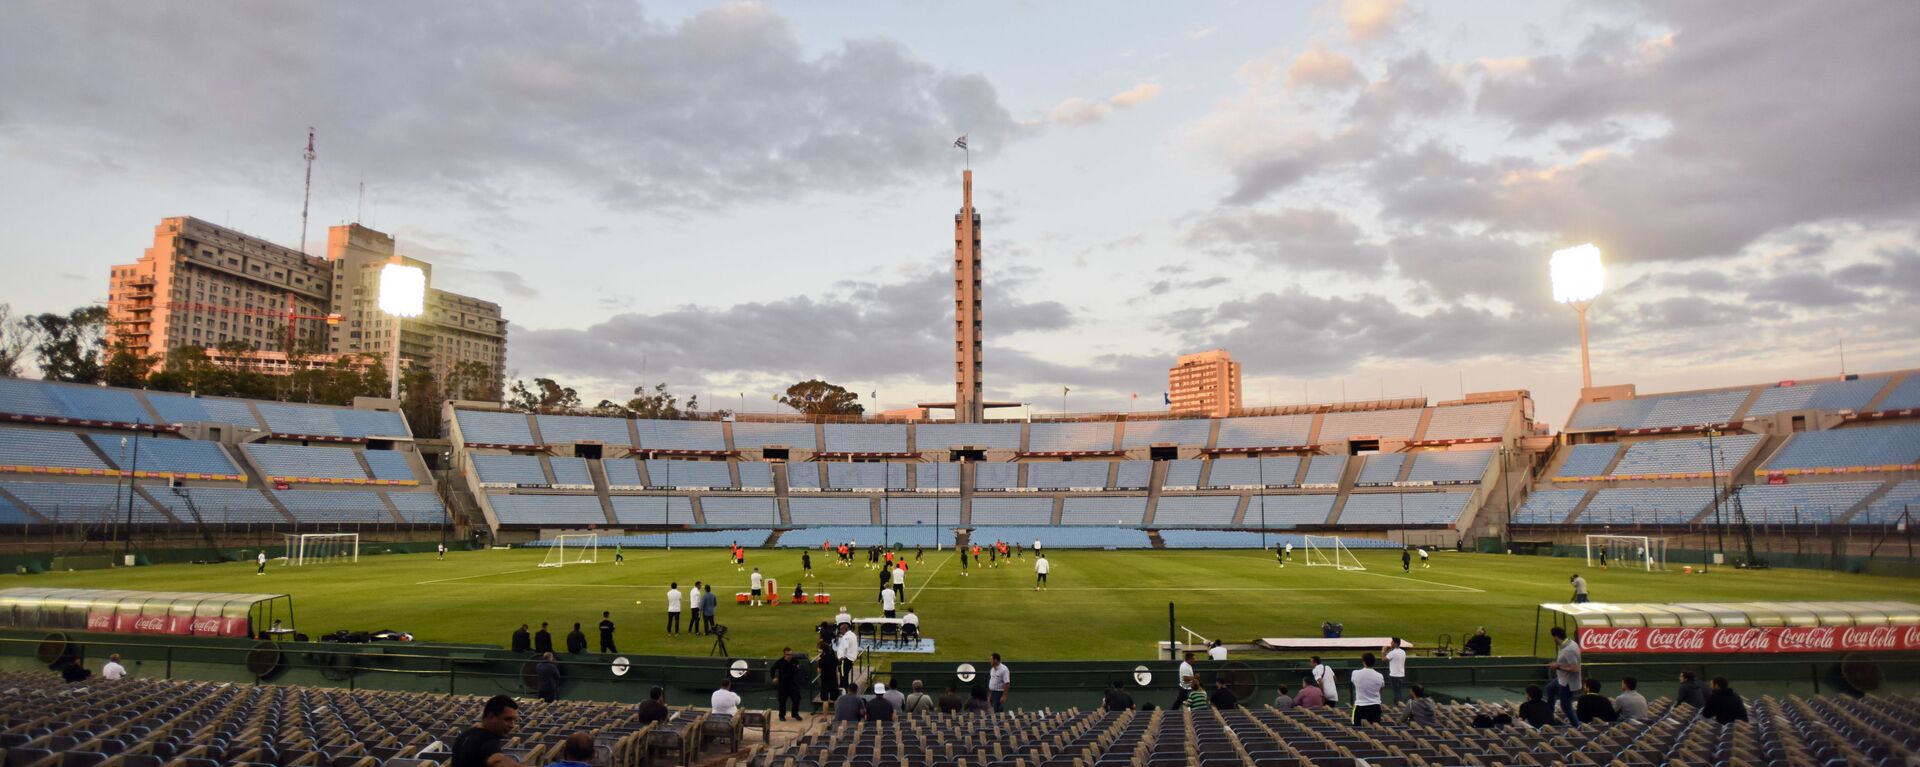 El Estadio Centenario en Montevideo, Uruguay - Sputnik Mundo, 1920, 29.07.2021